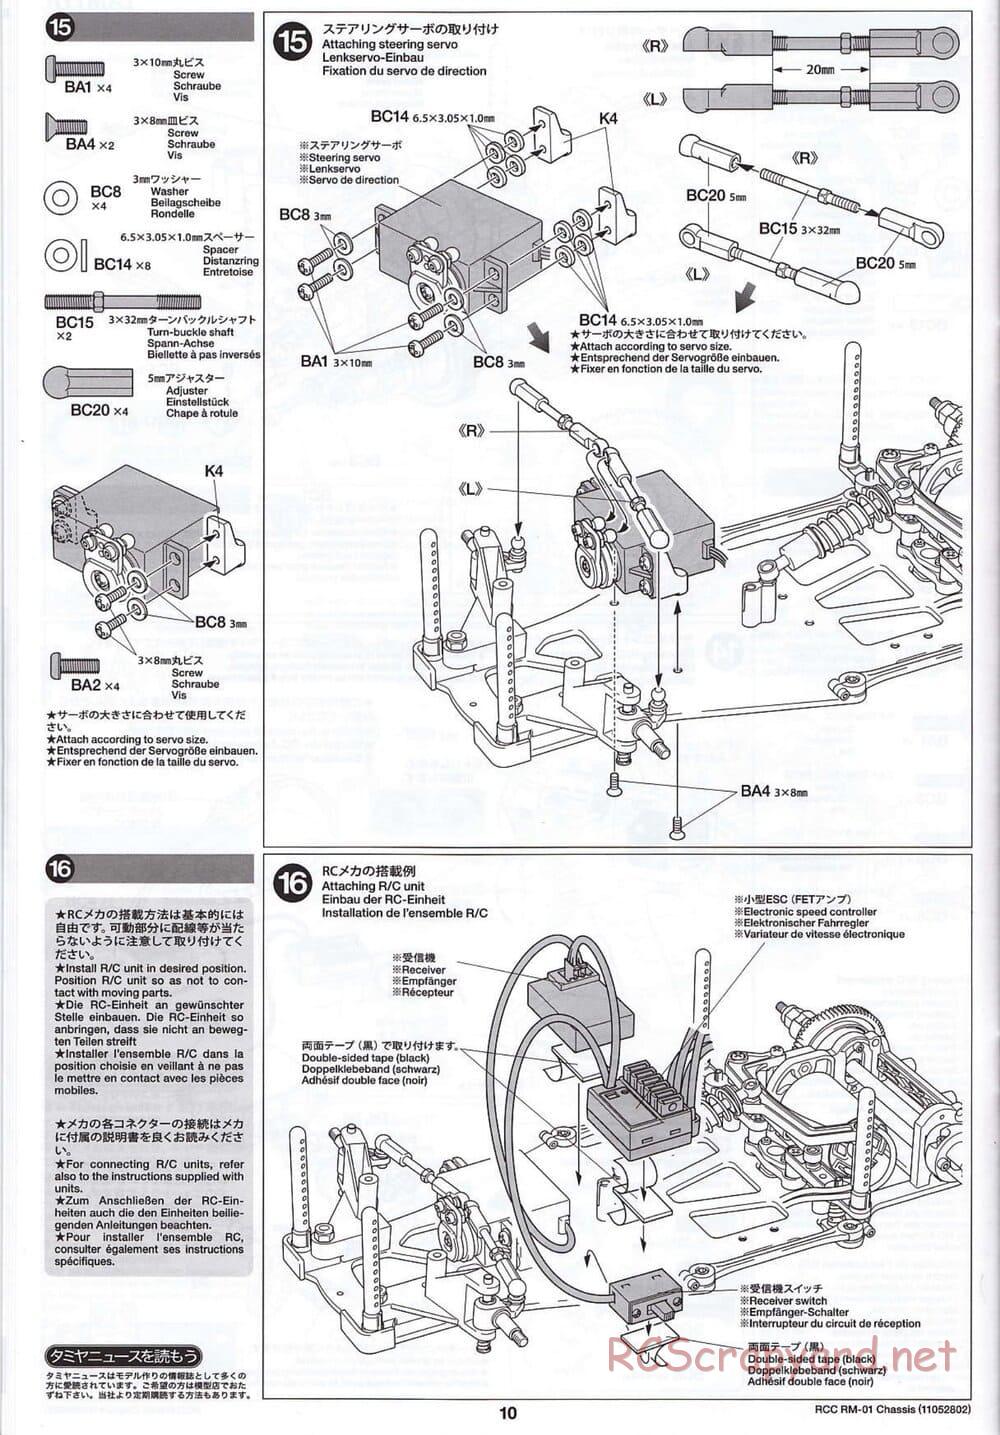 Tamiya - TA04-SS Chassis - Manual - Page 10